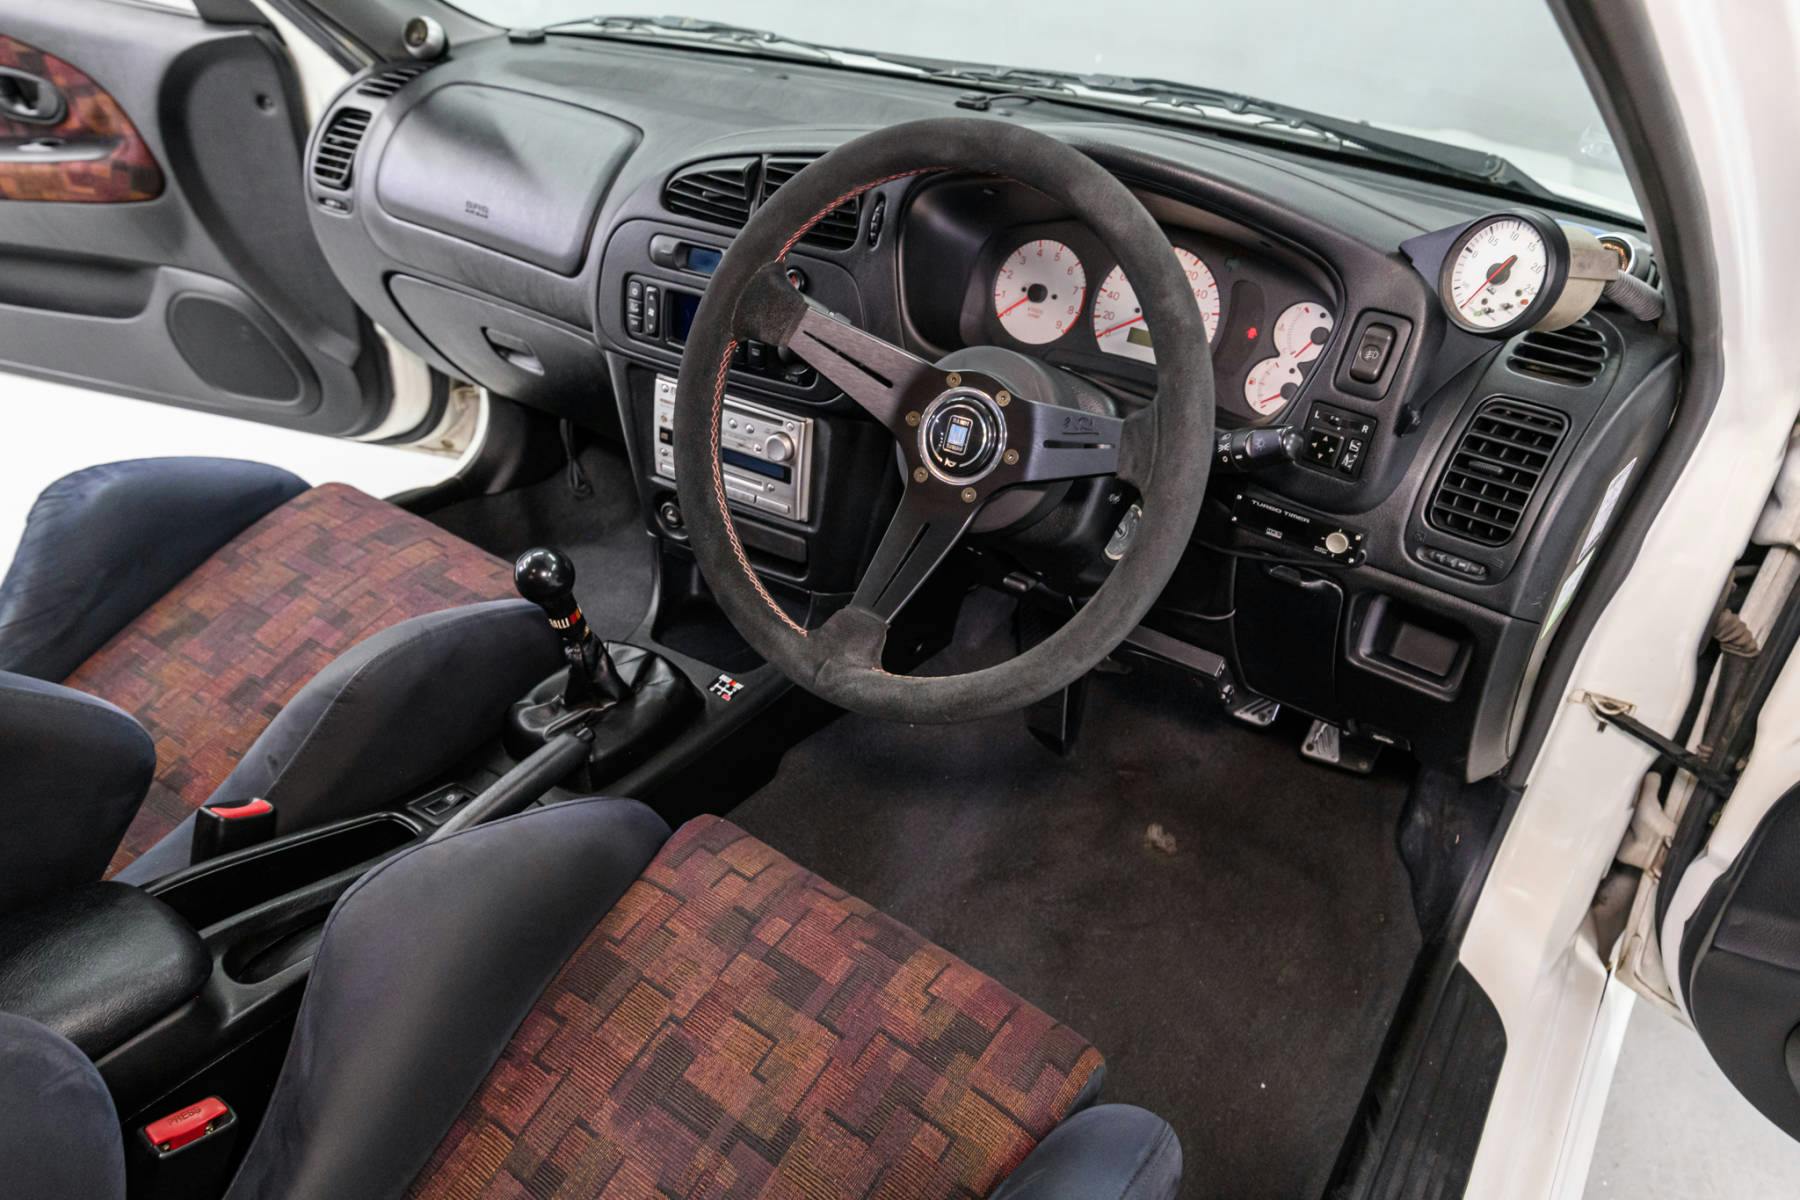 1997 Mitsubishi Lancer Evolution IV GSR cockpit steering wheel